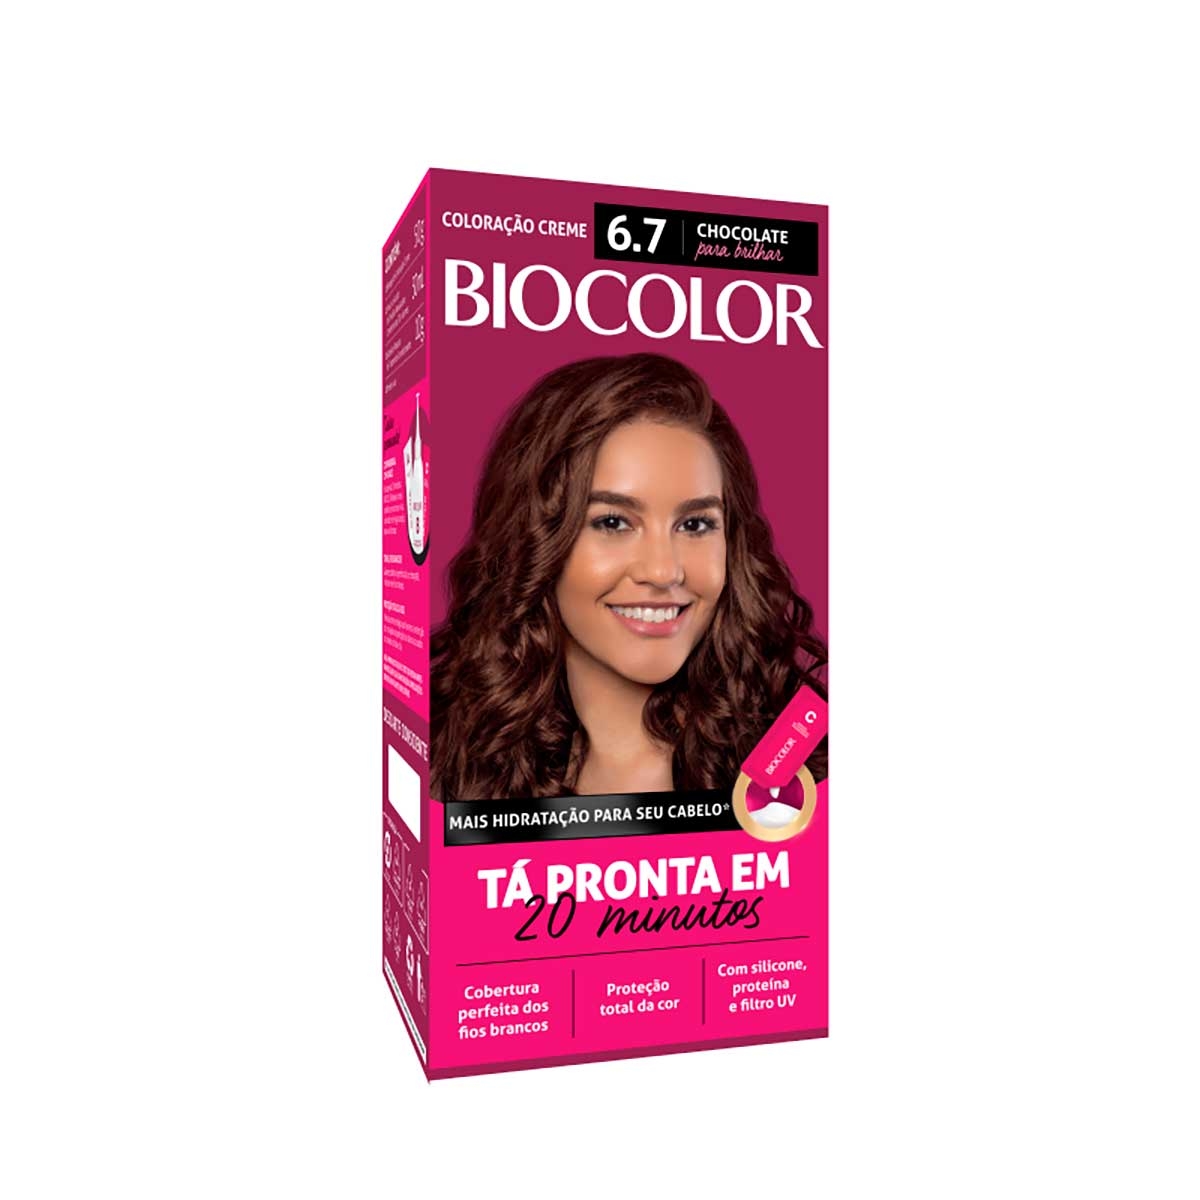 Biocolor Kit Econômico Coloração Creme 67 Chocolate para Brilhar com 1 unidade